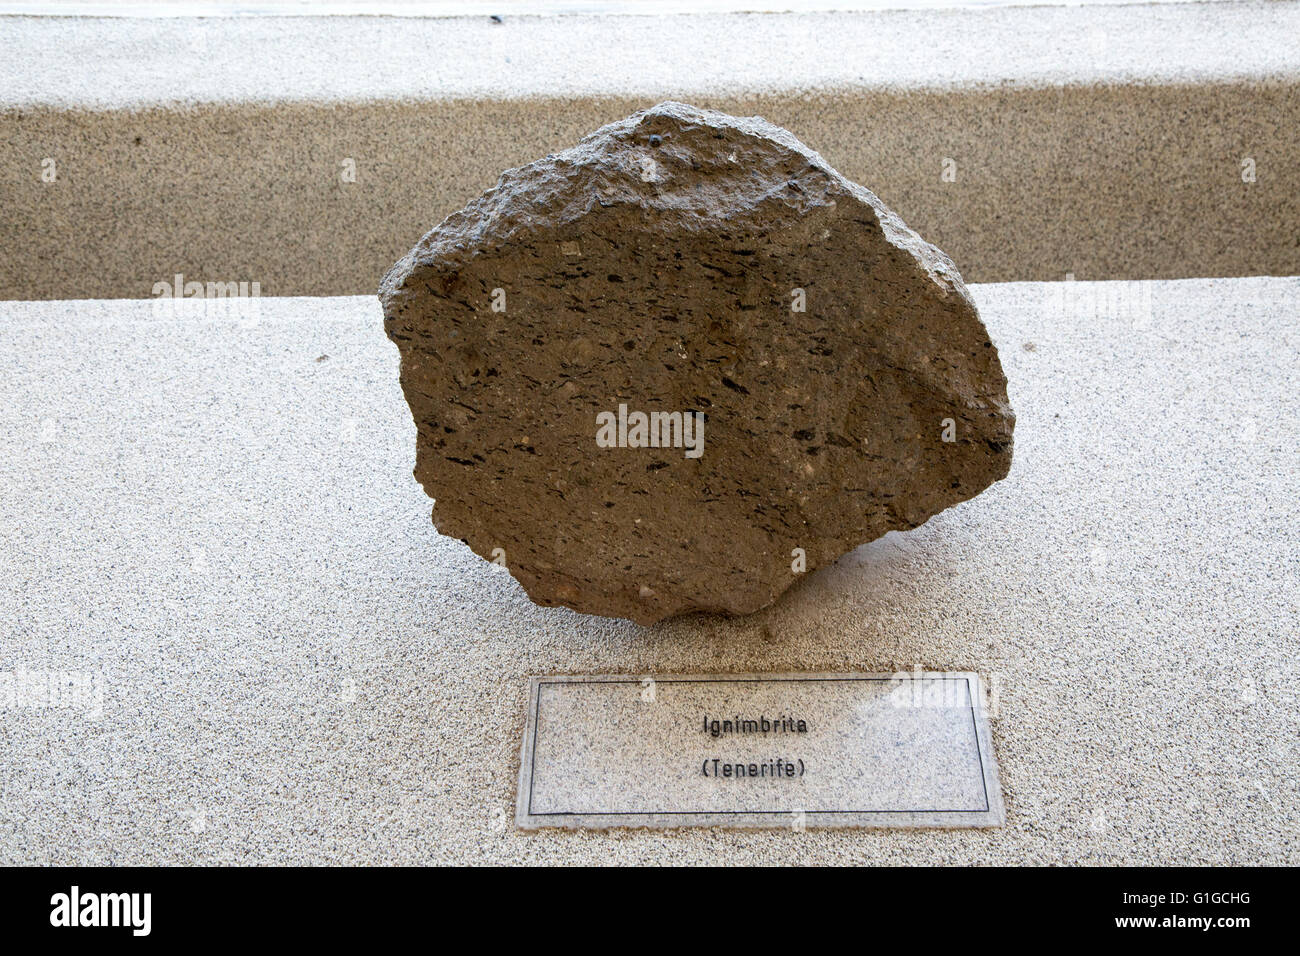 Ignimbrite rock sample geology display, Casa de los Volcanes volcanic study centre, Lanzarote, Canary island, Spain Stock Photo